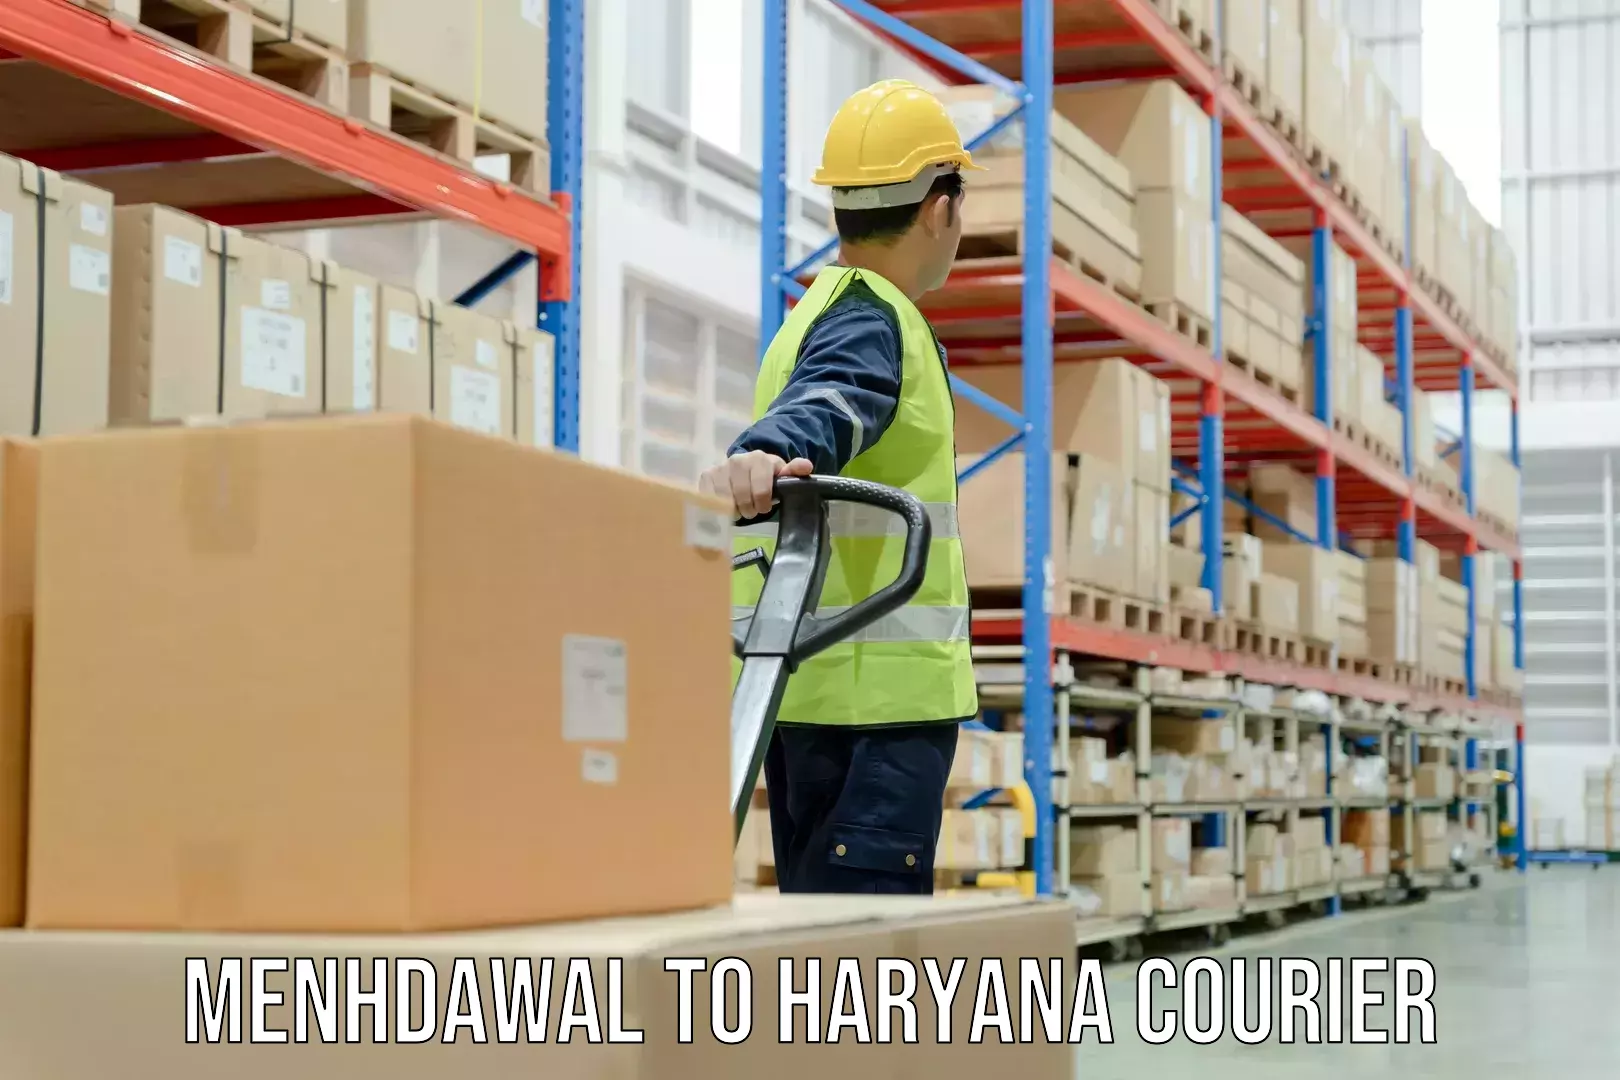 Advanced courier platforms Menhdawal to Chaudhary Charan Singh Haryana Agricultural University Hisar